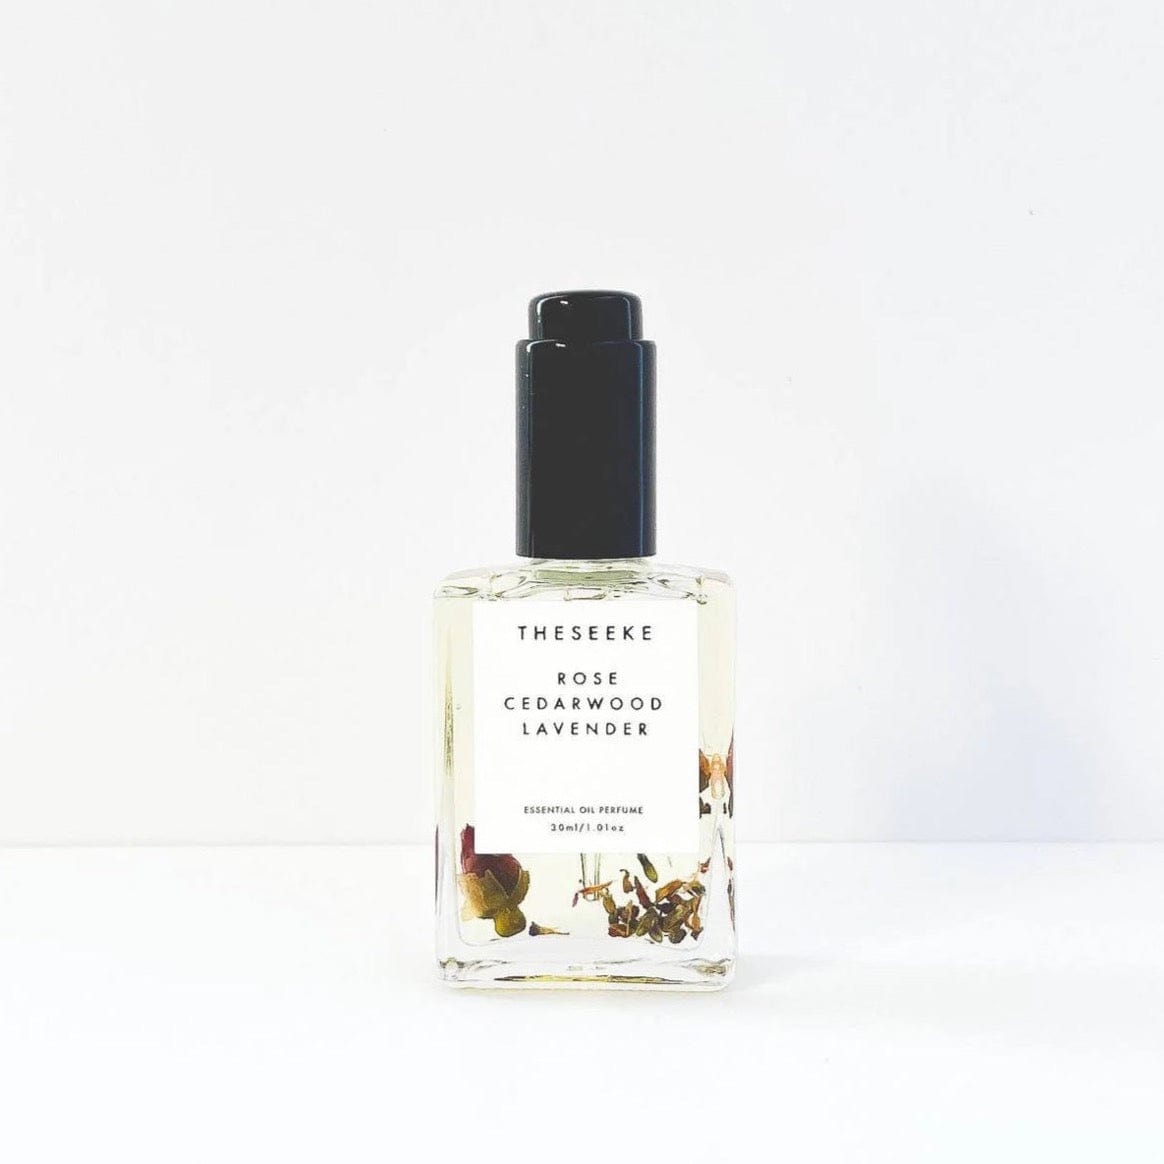 Rose Cedarwood Lavender Oil Perfume by The Seeke